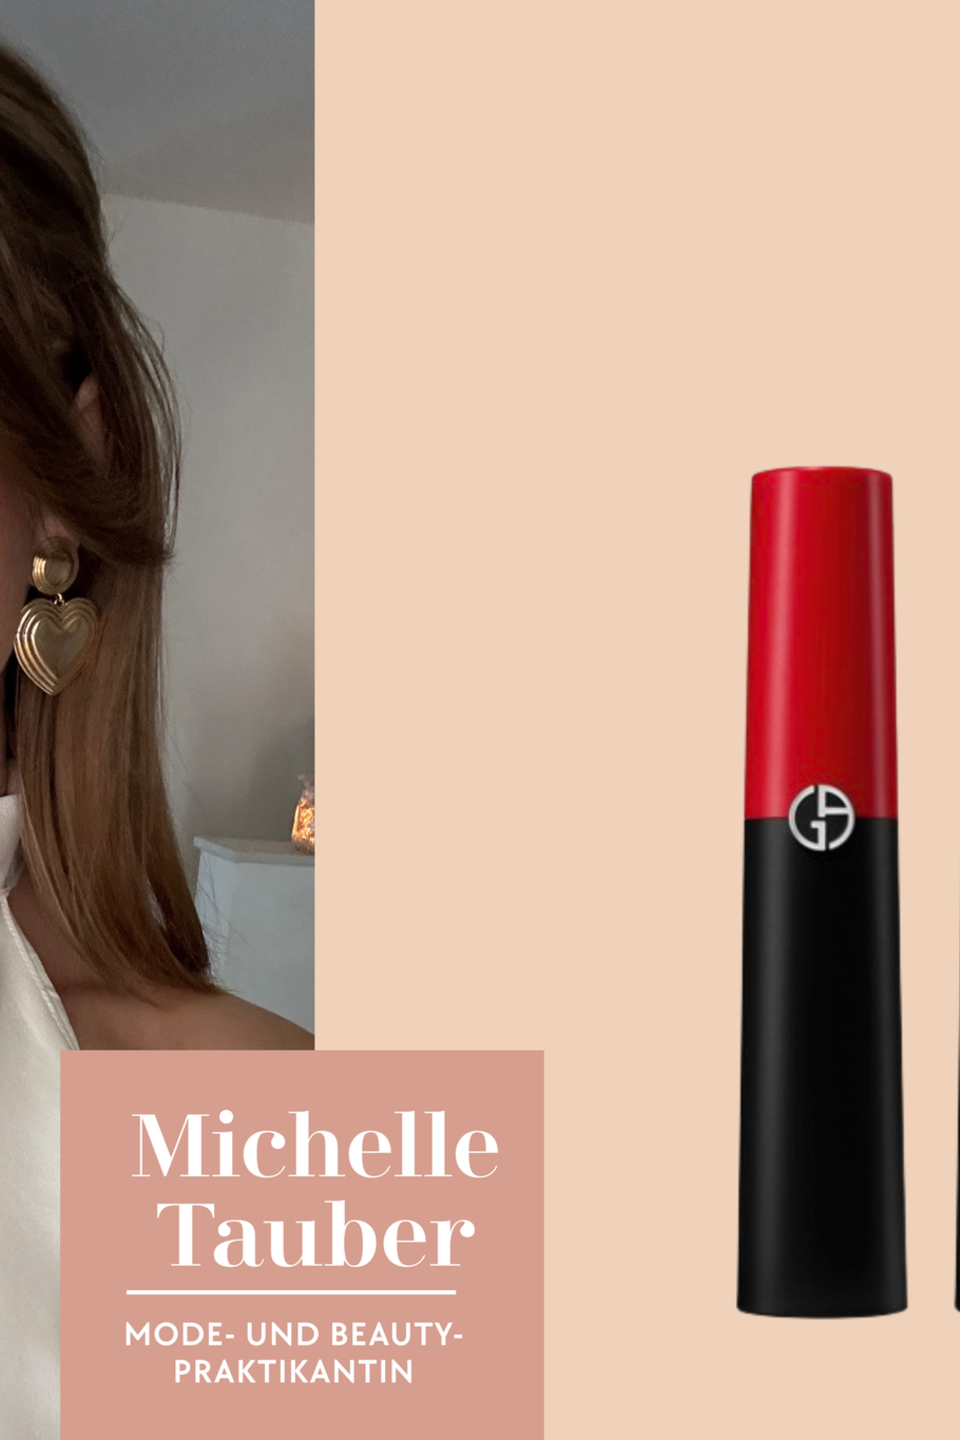 Praktikantin Michelle wagt sich zum neuen Jahr an rote Lippen und testet den "Lip Power Matte" von Armani Beauty. 